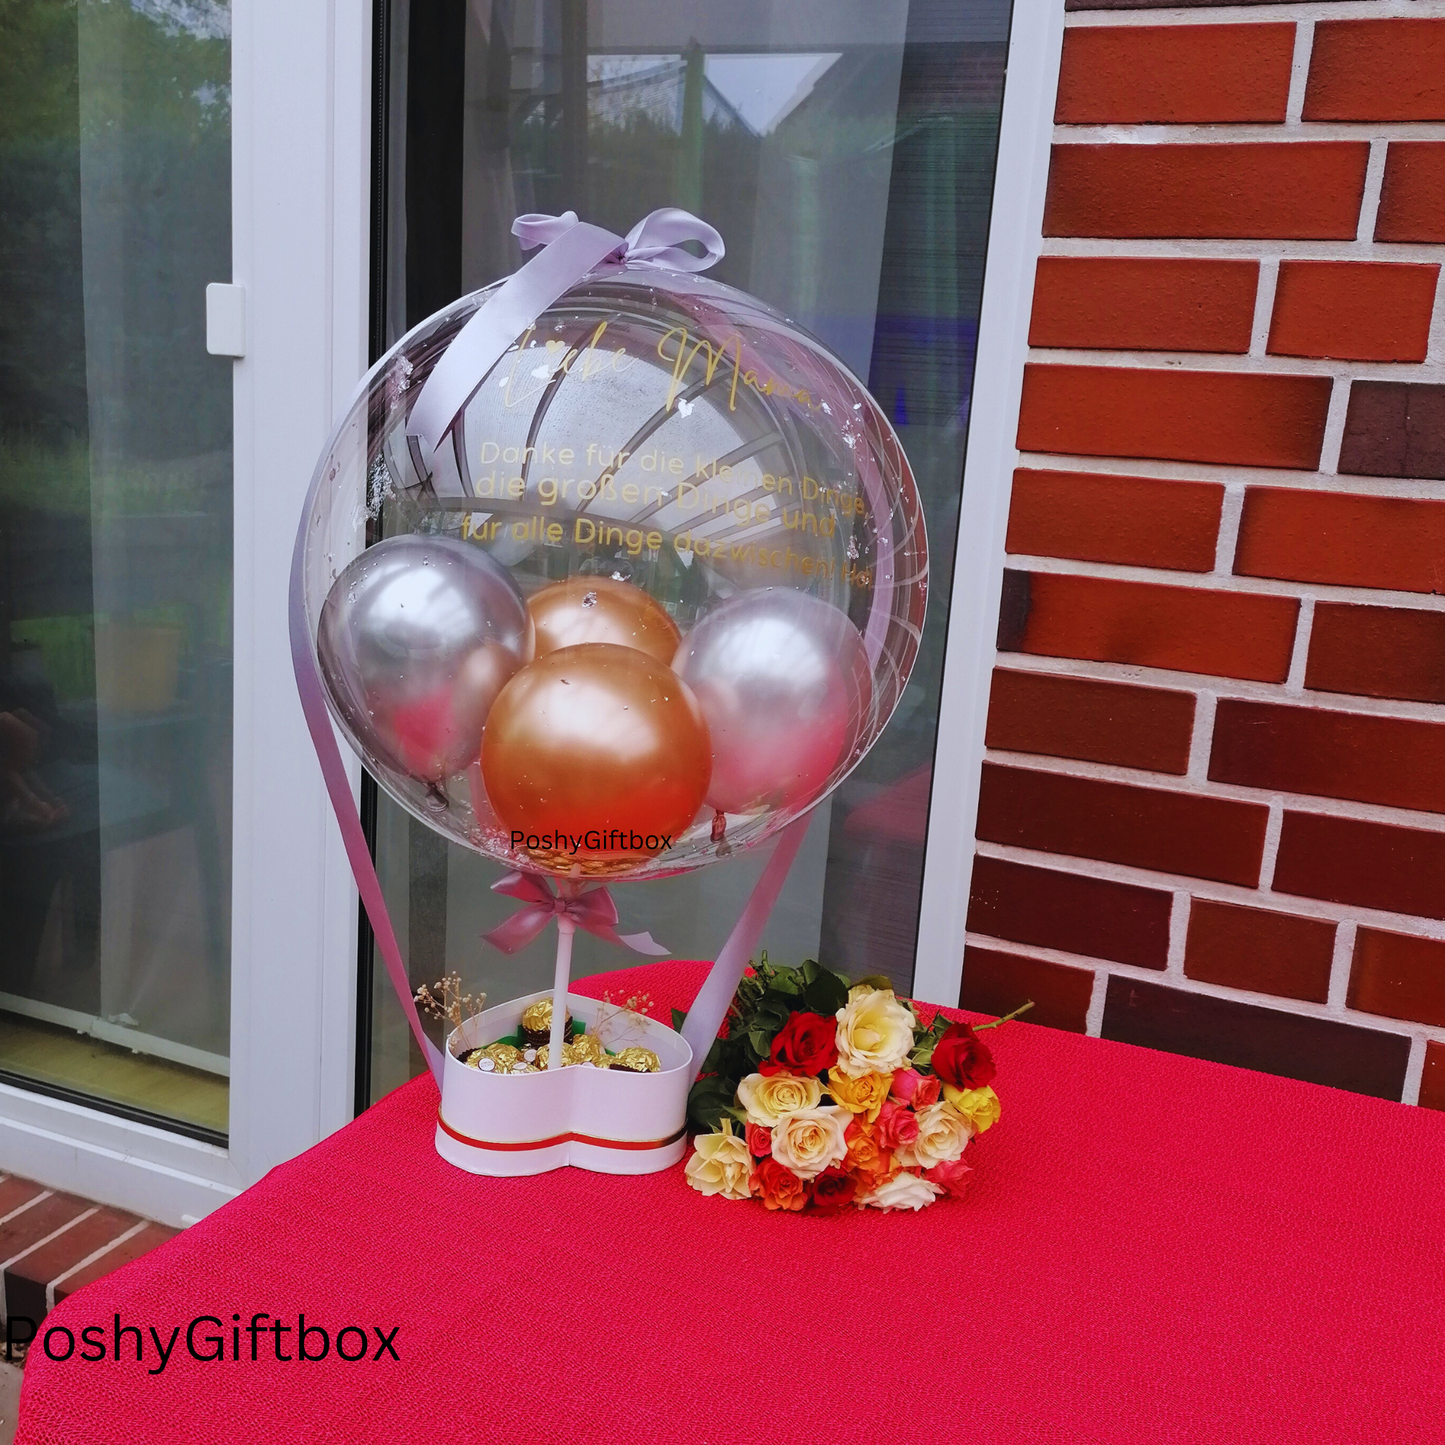 Ballon mit Blumen/Personalisierter Ballon/Ballongrüße/Geburtstagsgeshenk/Muttertagsgeschenk/Geschenke für Frauen/Geschenk Mama,Oma,Freundin  PoshyGiftbox